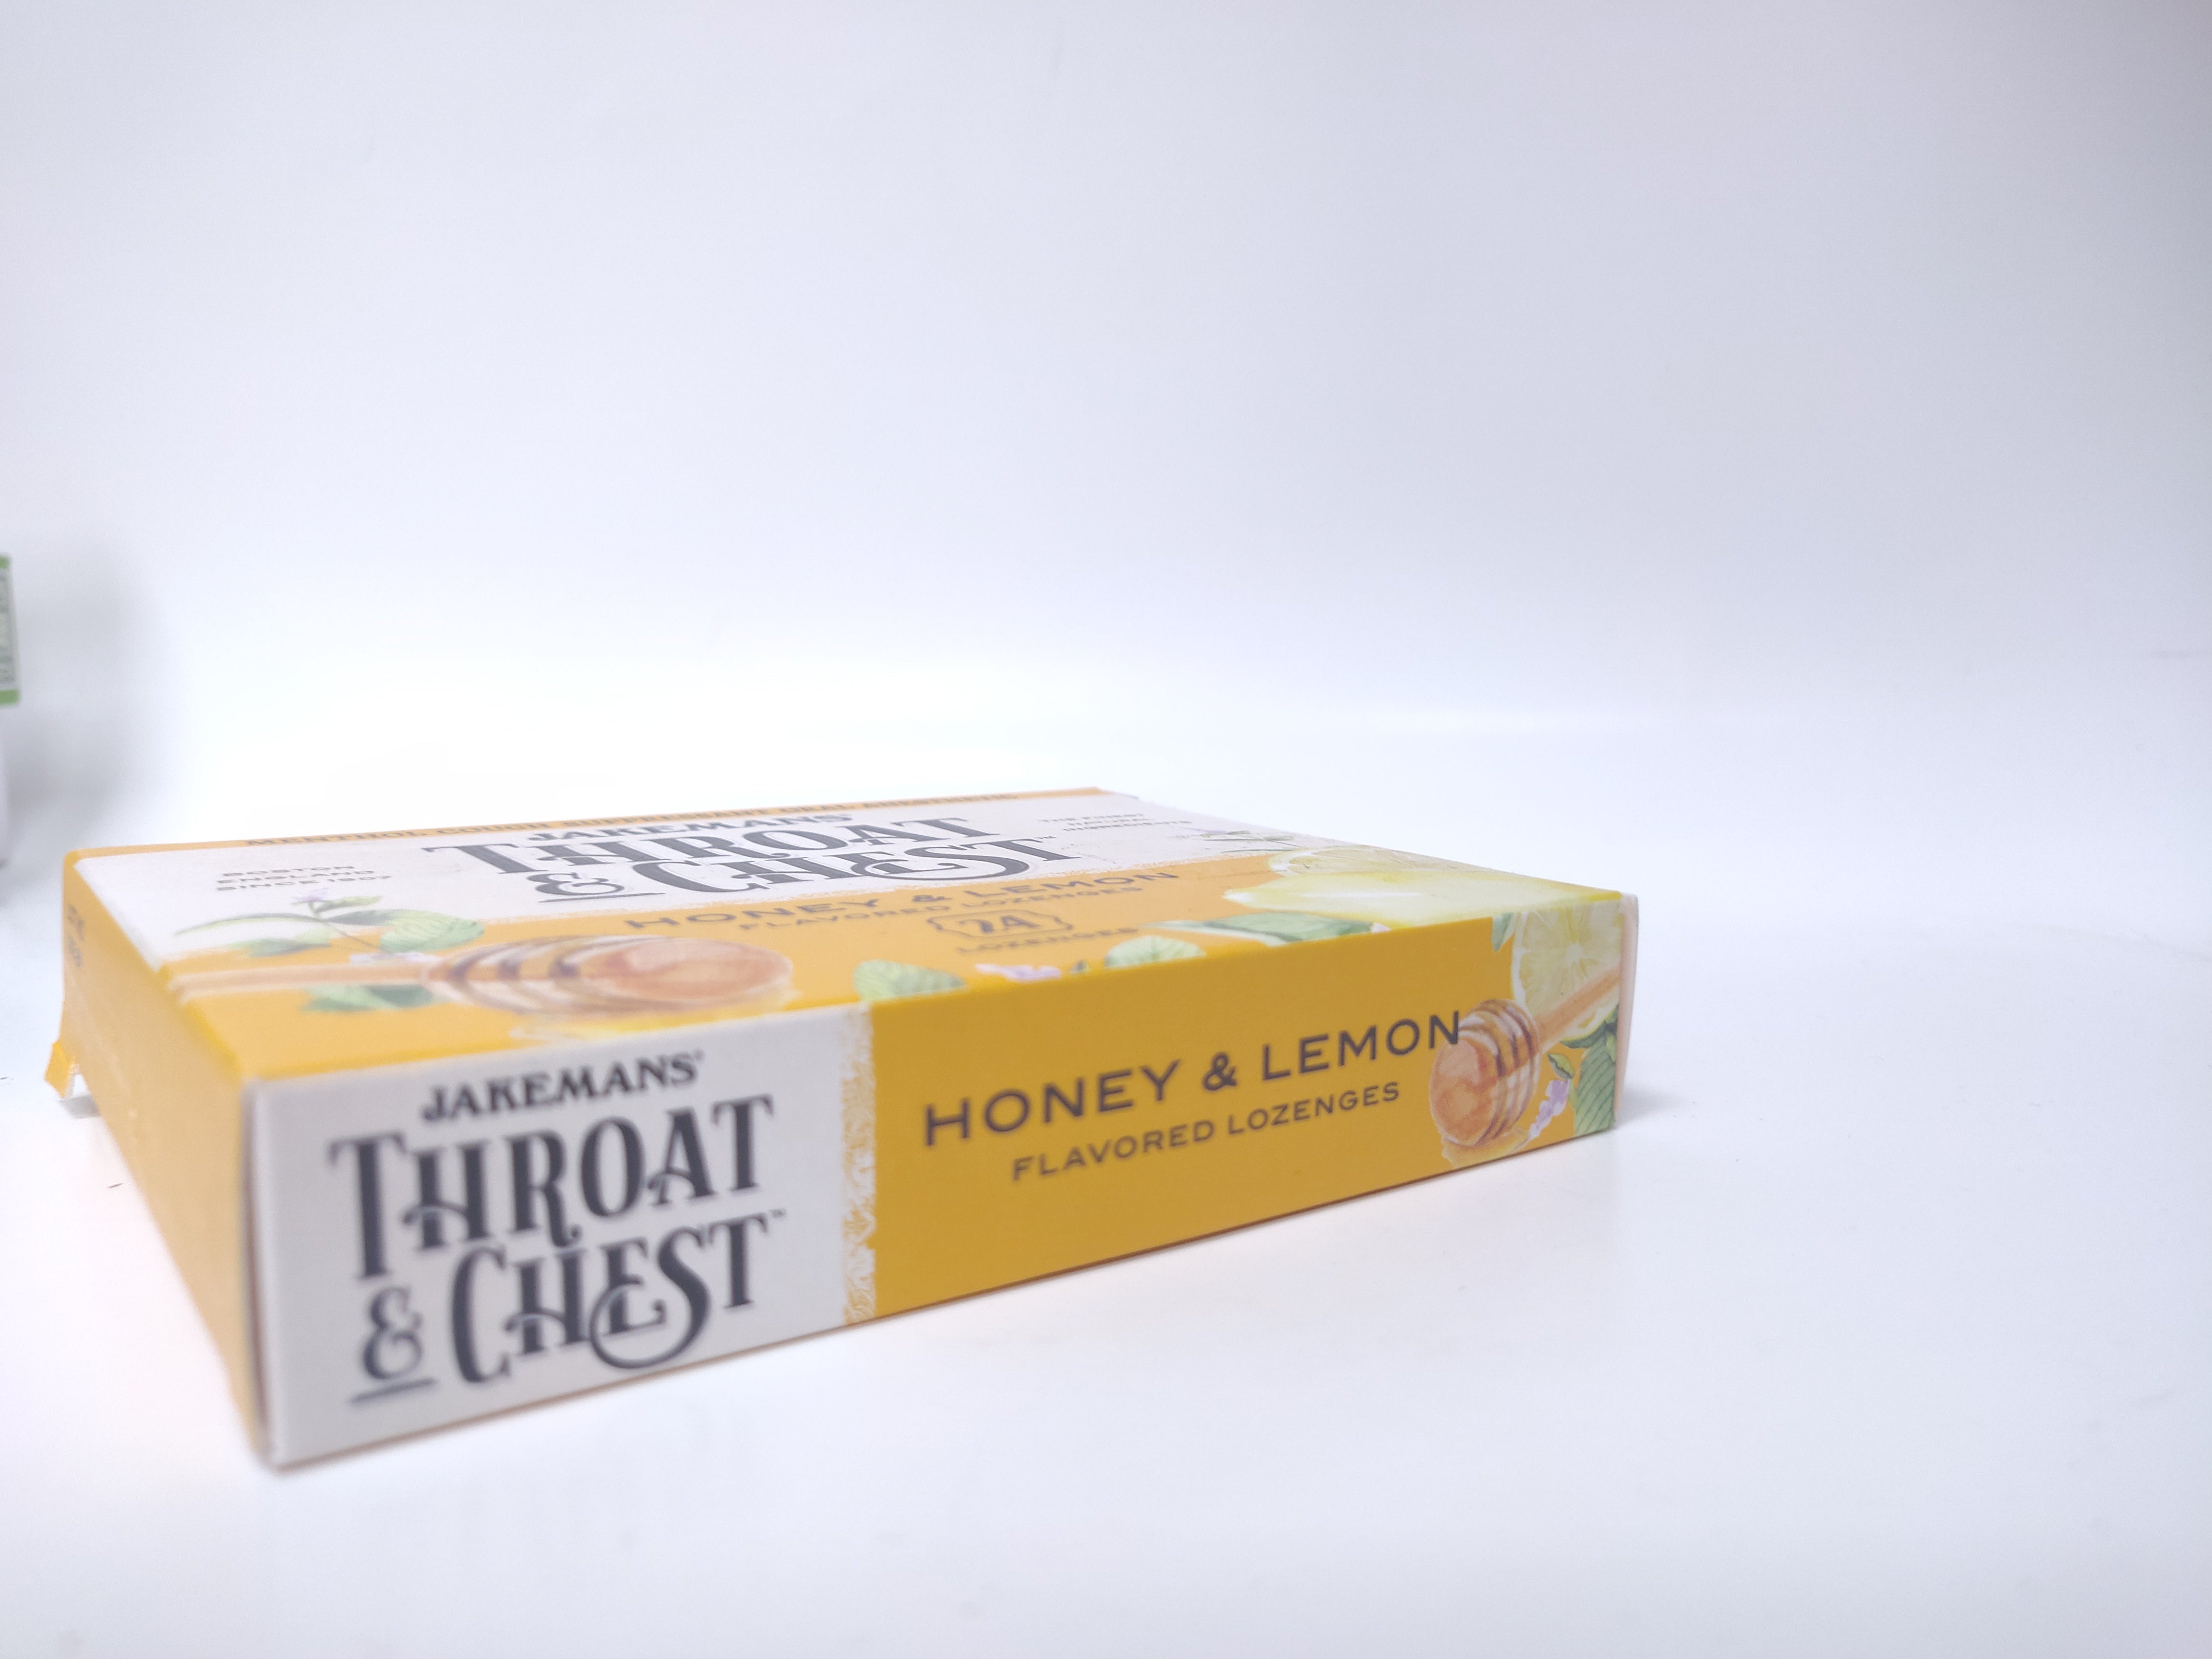 Jakemans Throat & Chest Honey & Lemon Flavored Lozenges - 24 ct*